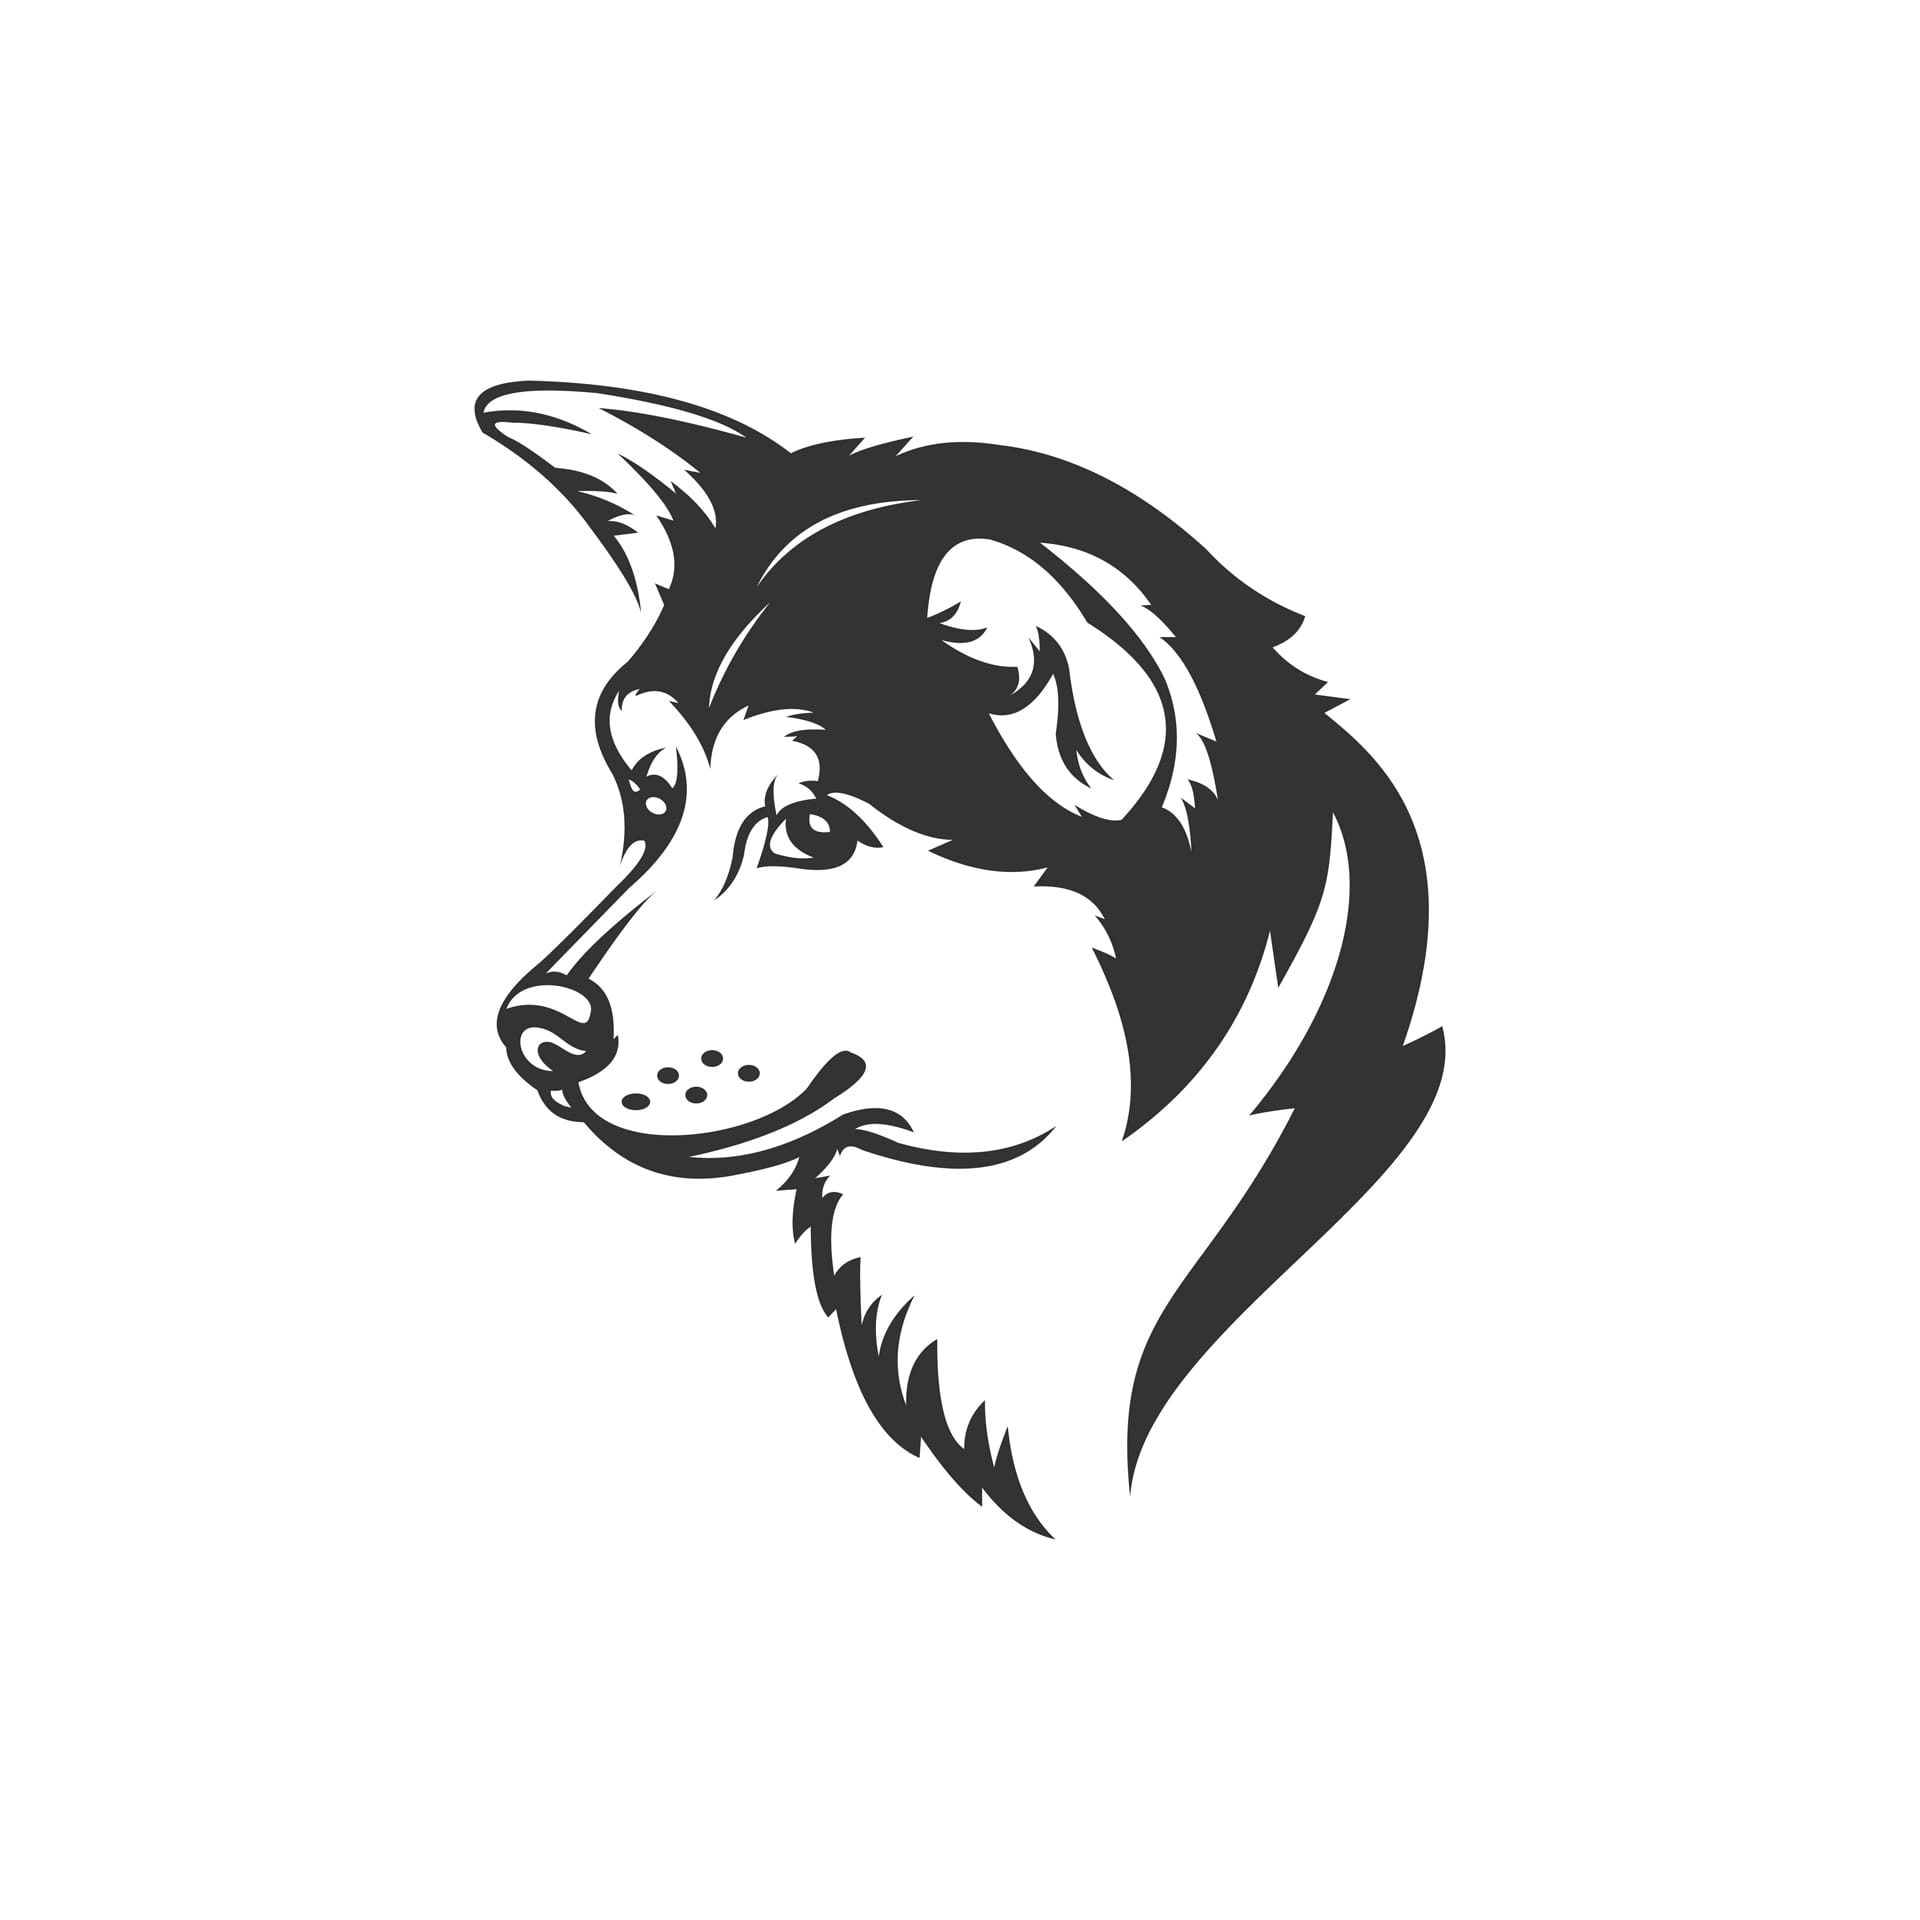 Dog mascot logo design